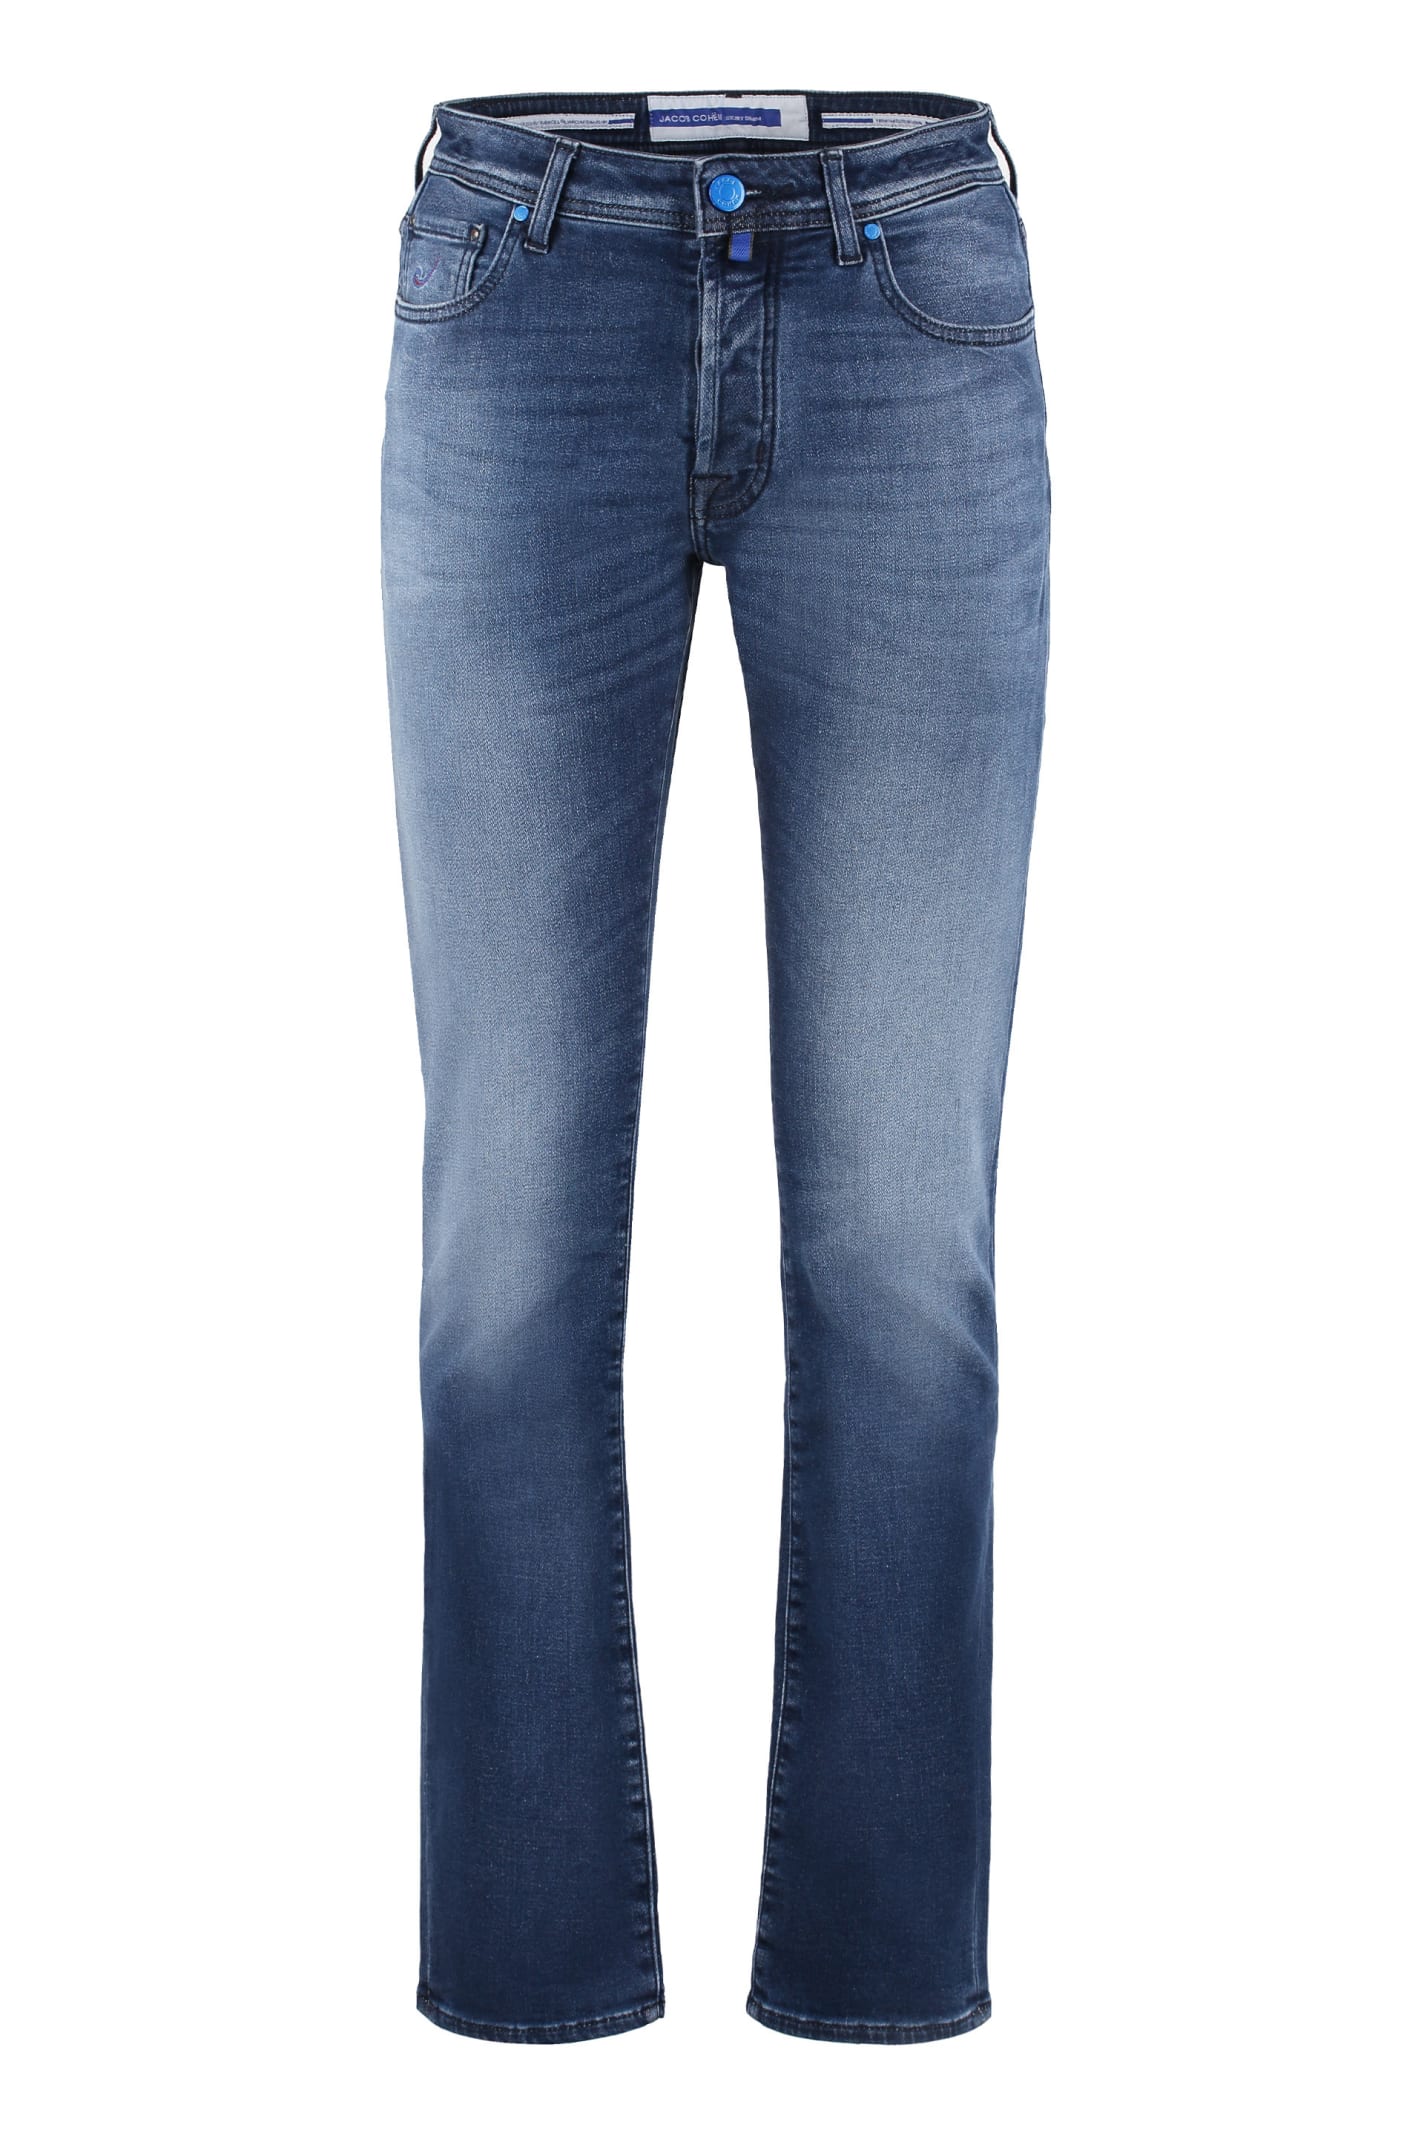 Jacob Cohen Bard Slim Fit Jeans